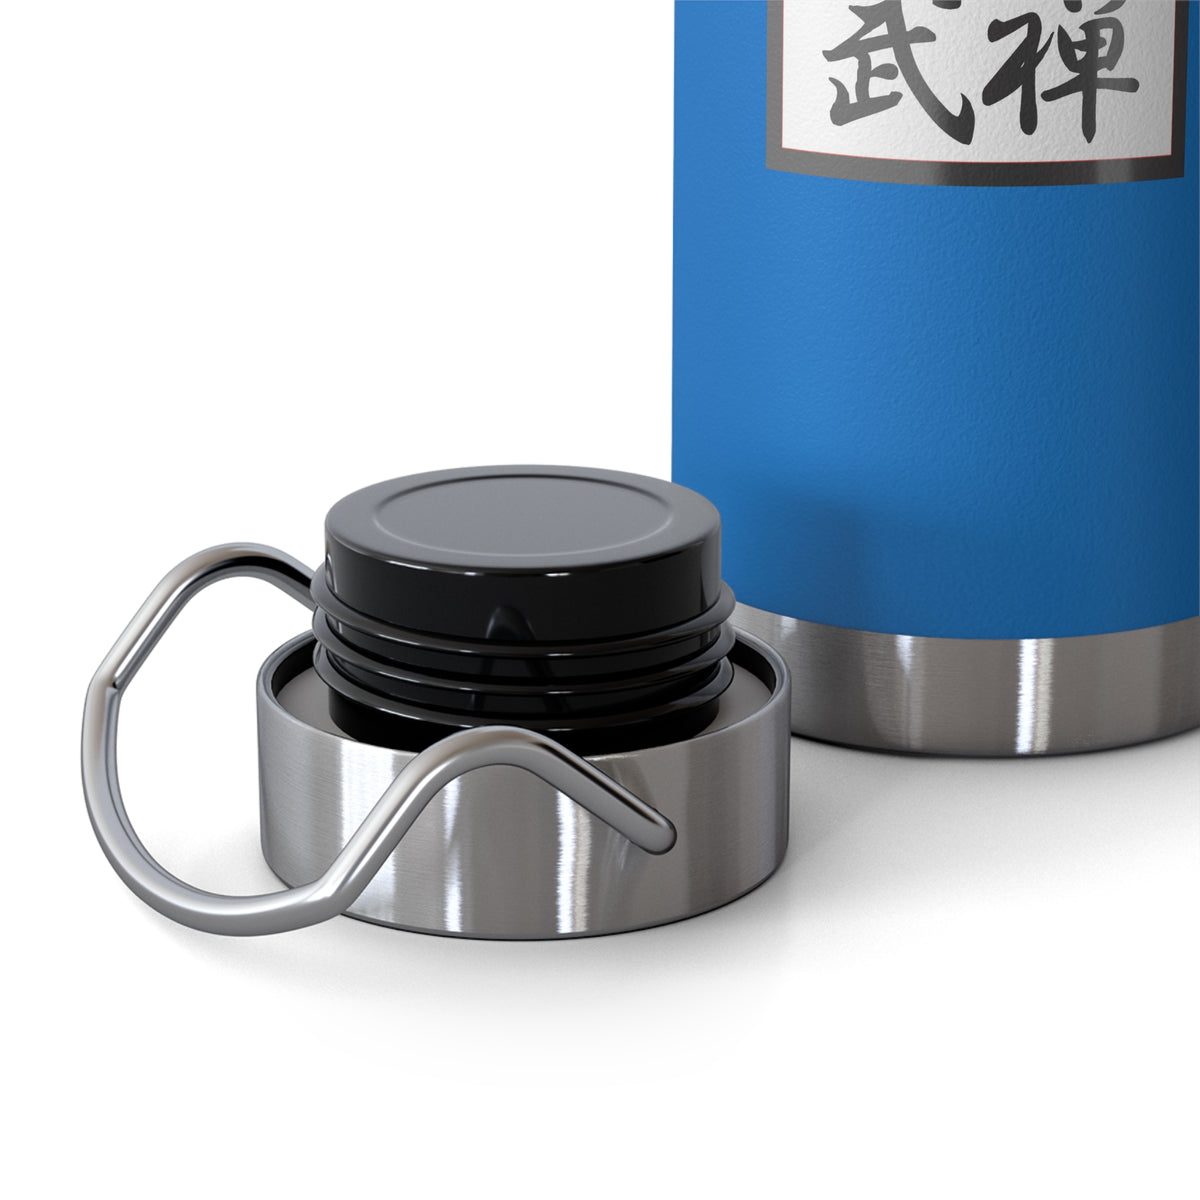 Zen Combat Copper Vacuum Insulated Bottle, 22oz